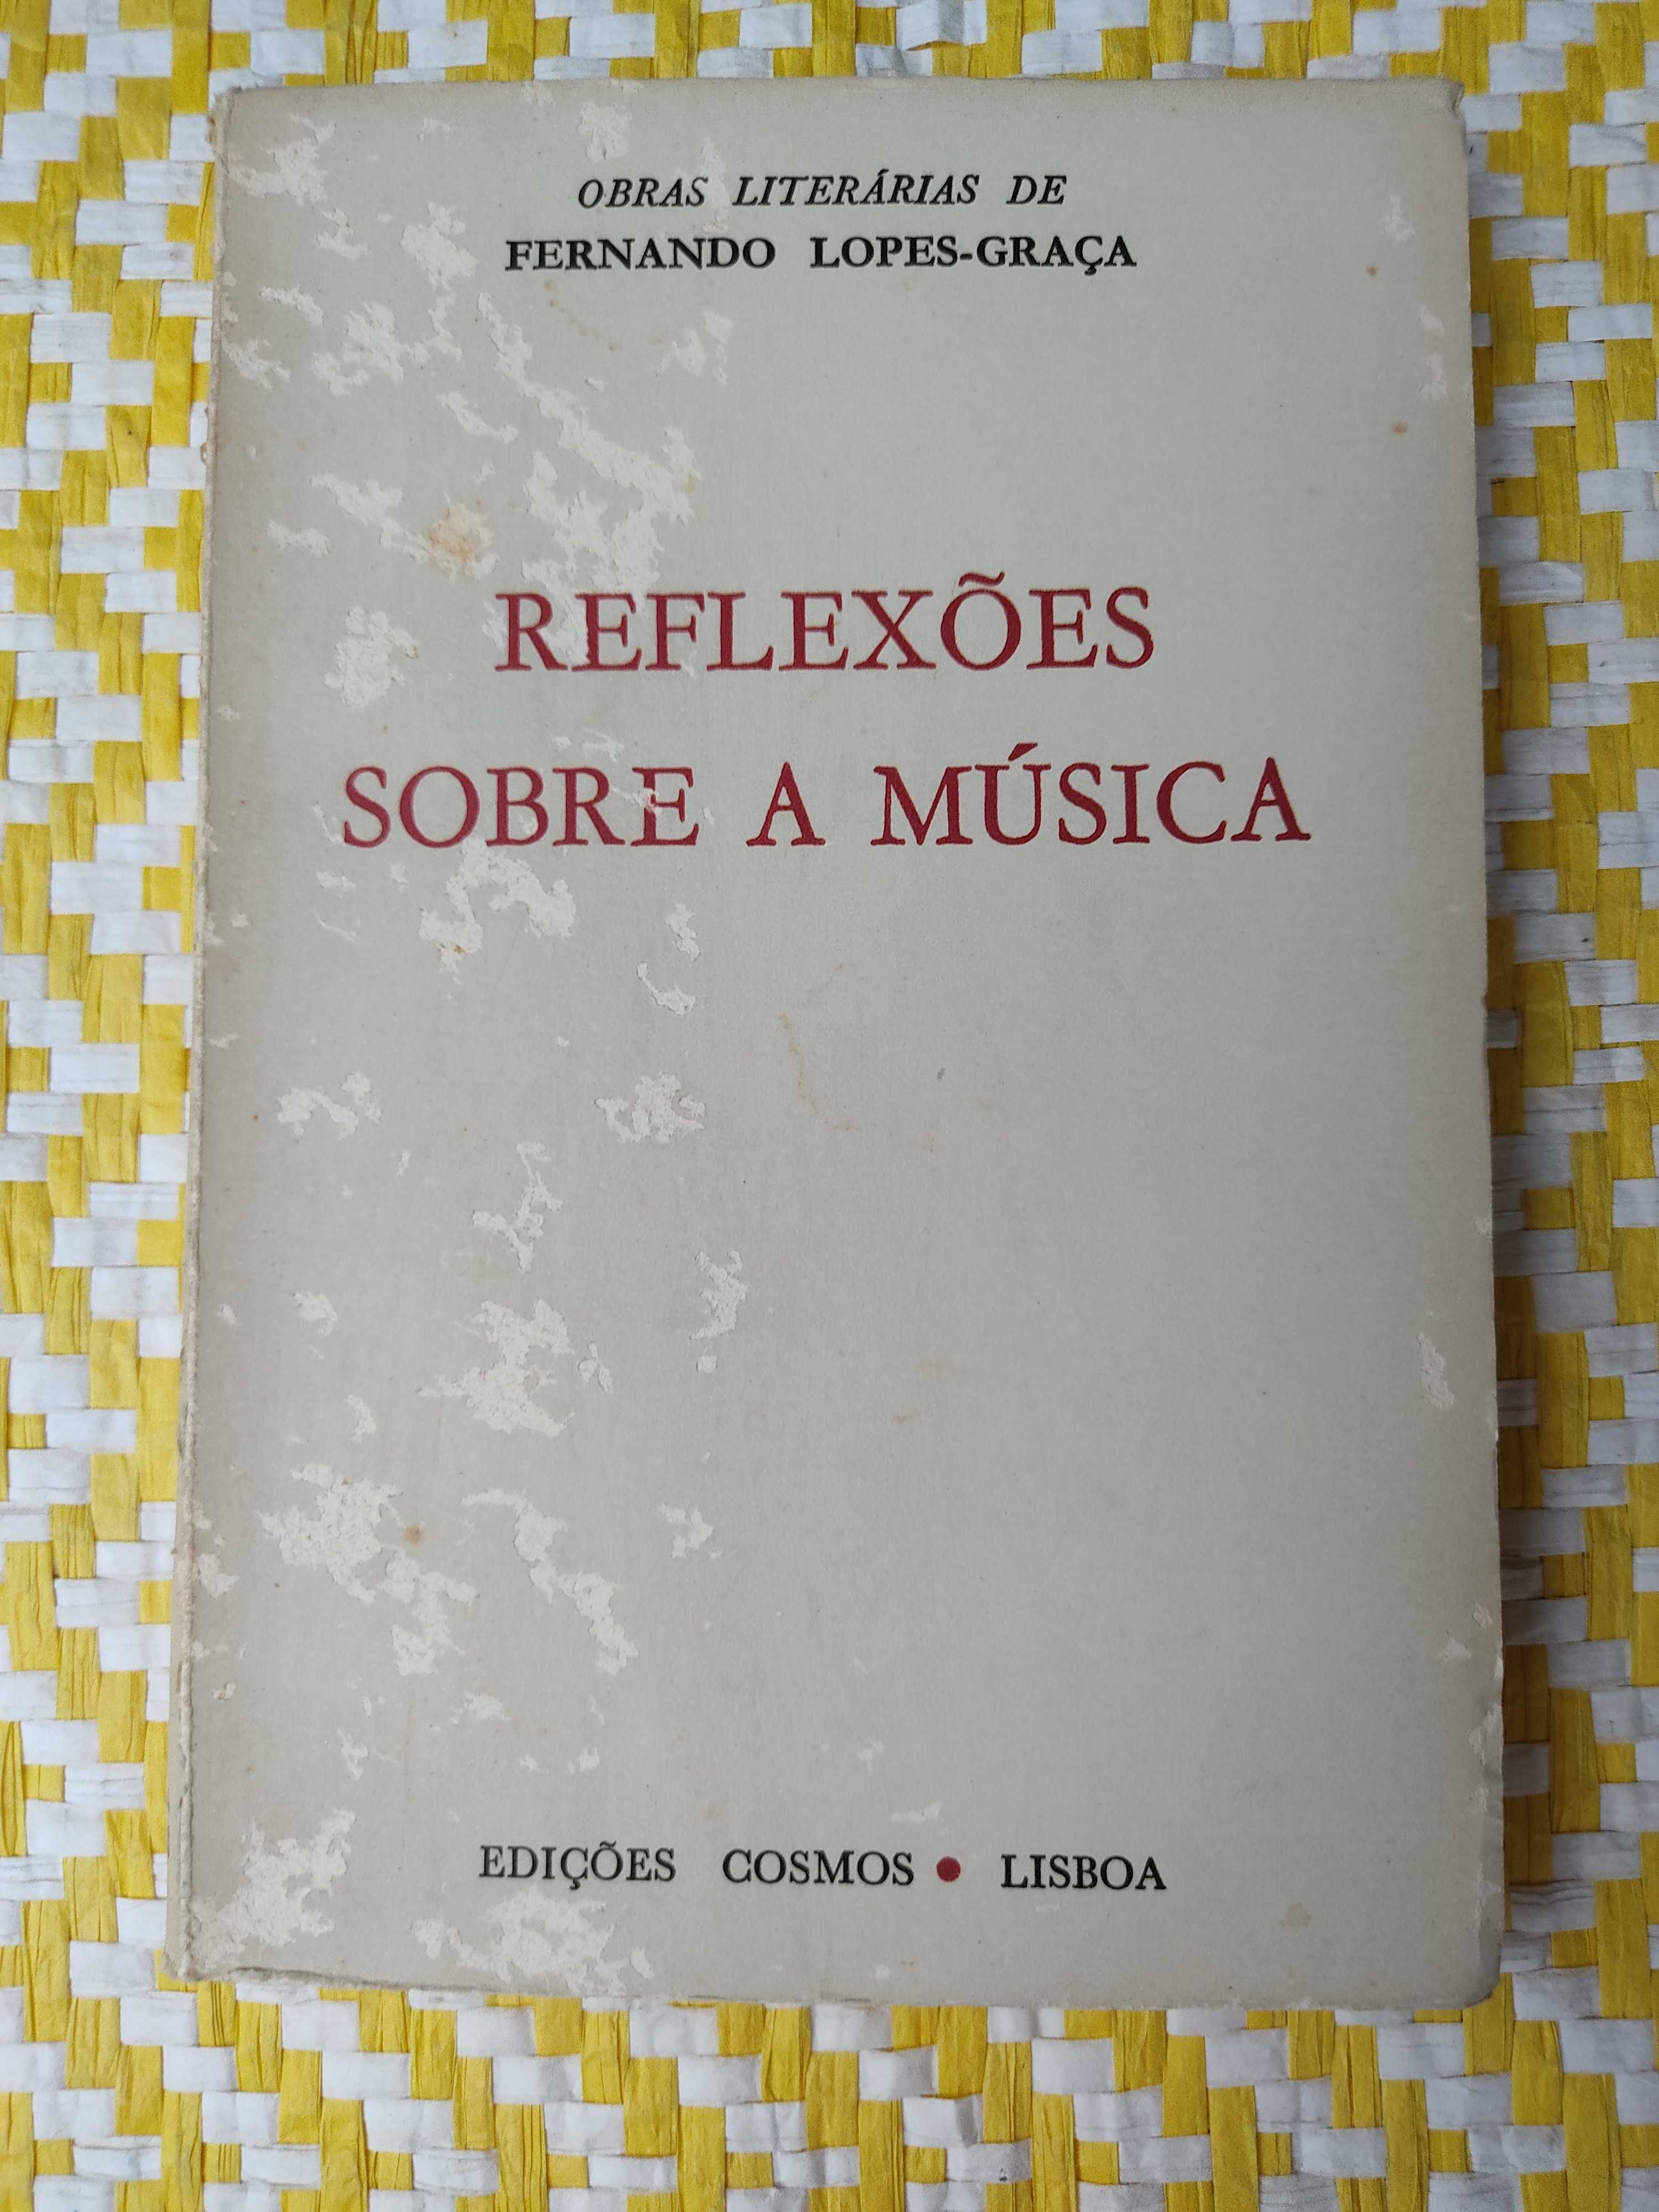 Reflexões sobre a música 
Fernando Lopes-Graça